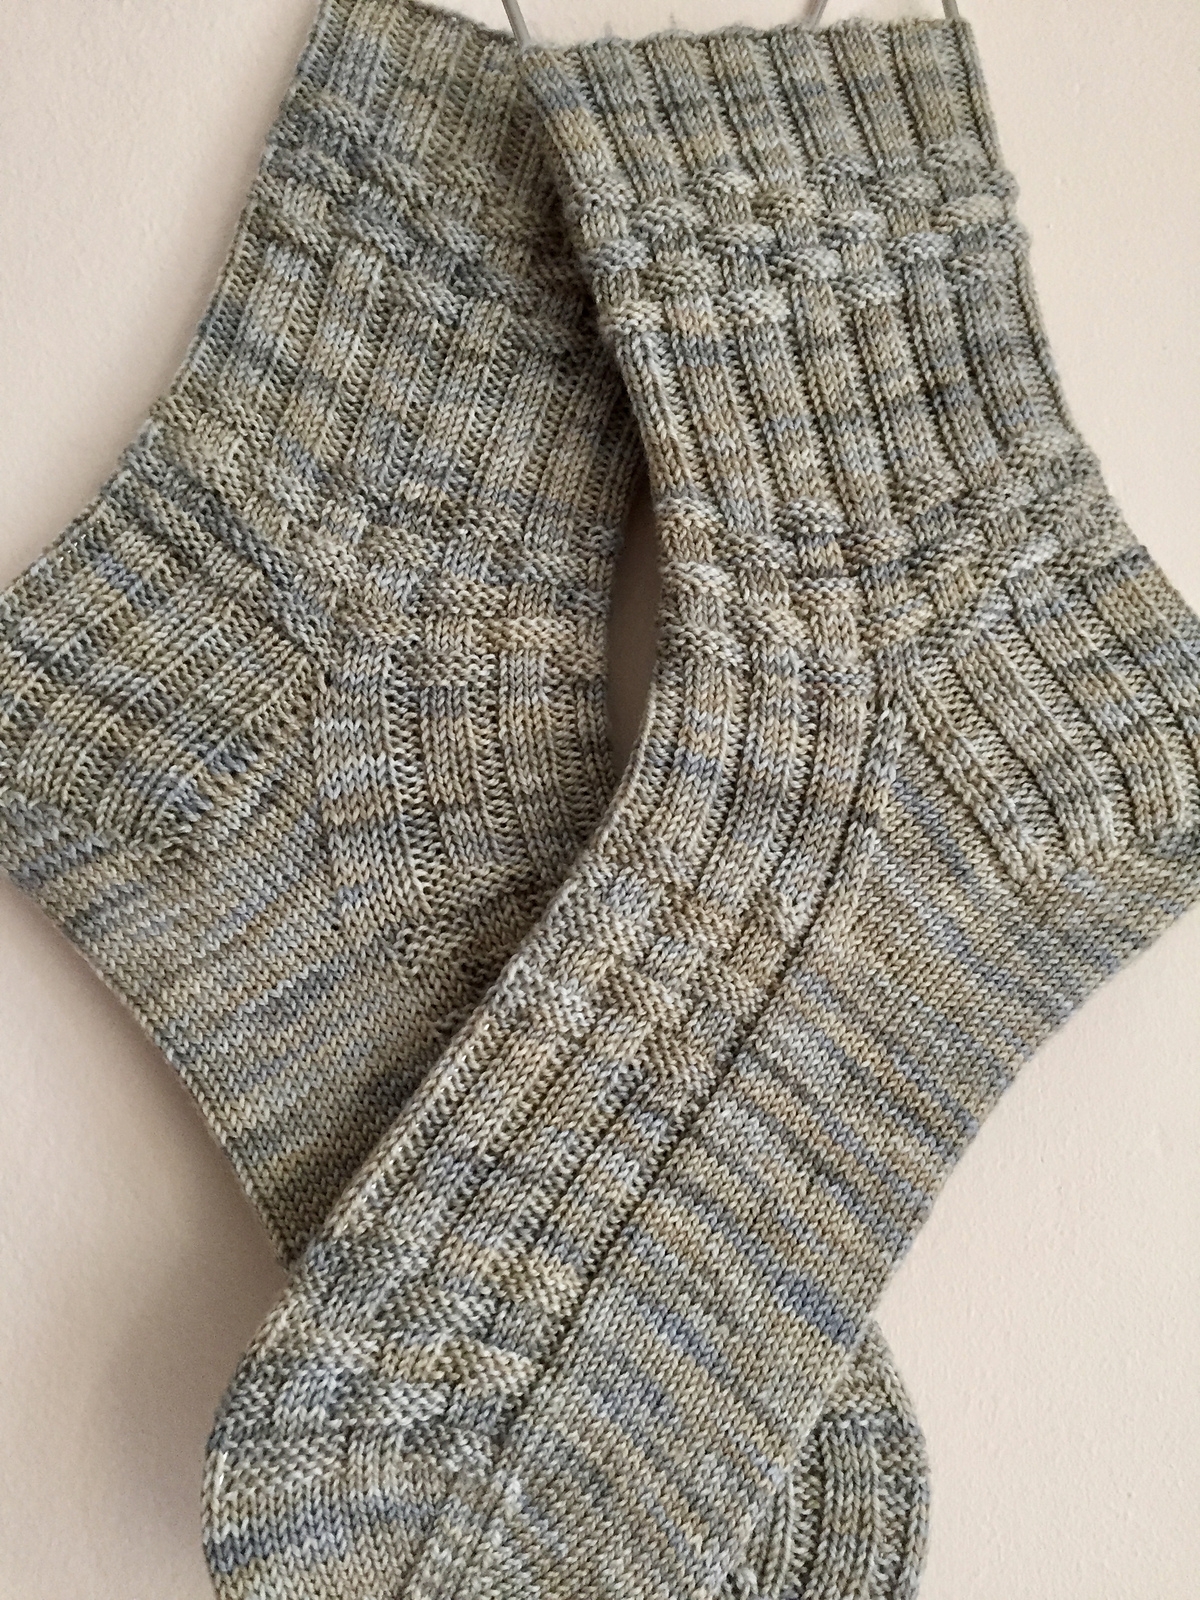 Носочки резинкой. Носки мужские YAMEINA Knitting. Носки мужские 41-47 YAMEINA Knitting. Носки связанные резинкой. Мужские носки спицами.